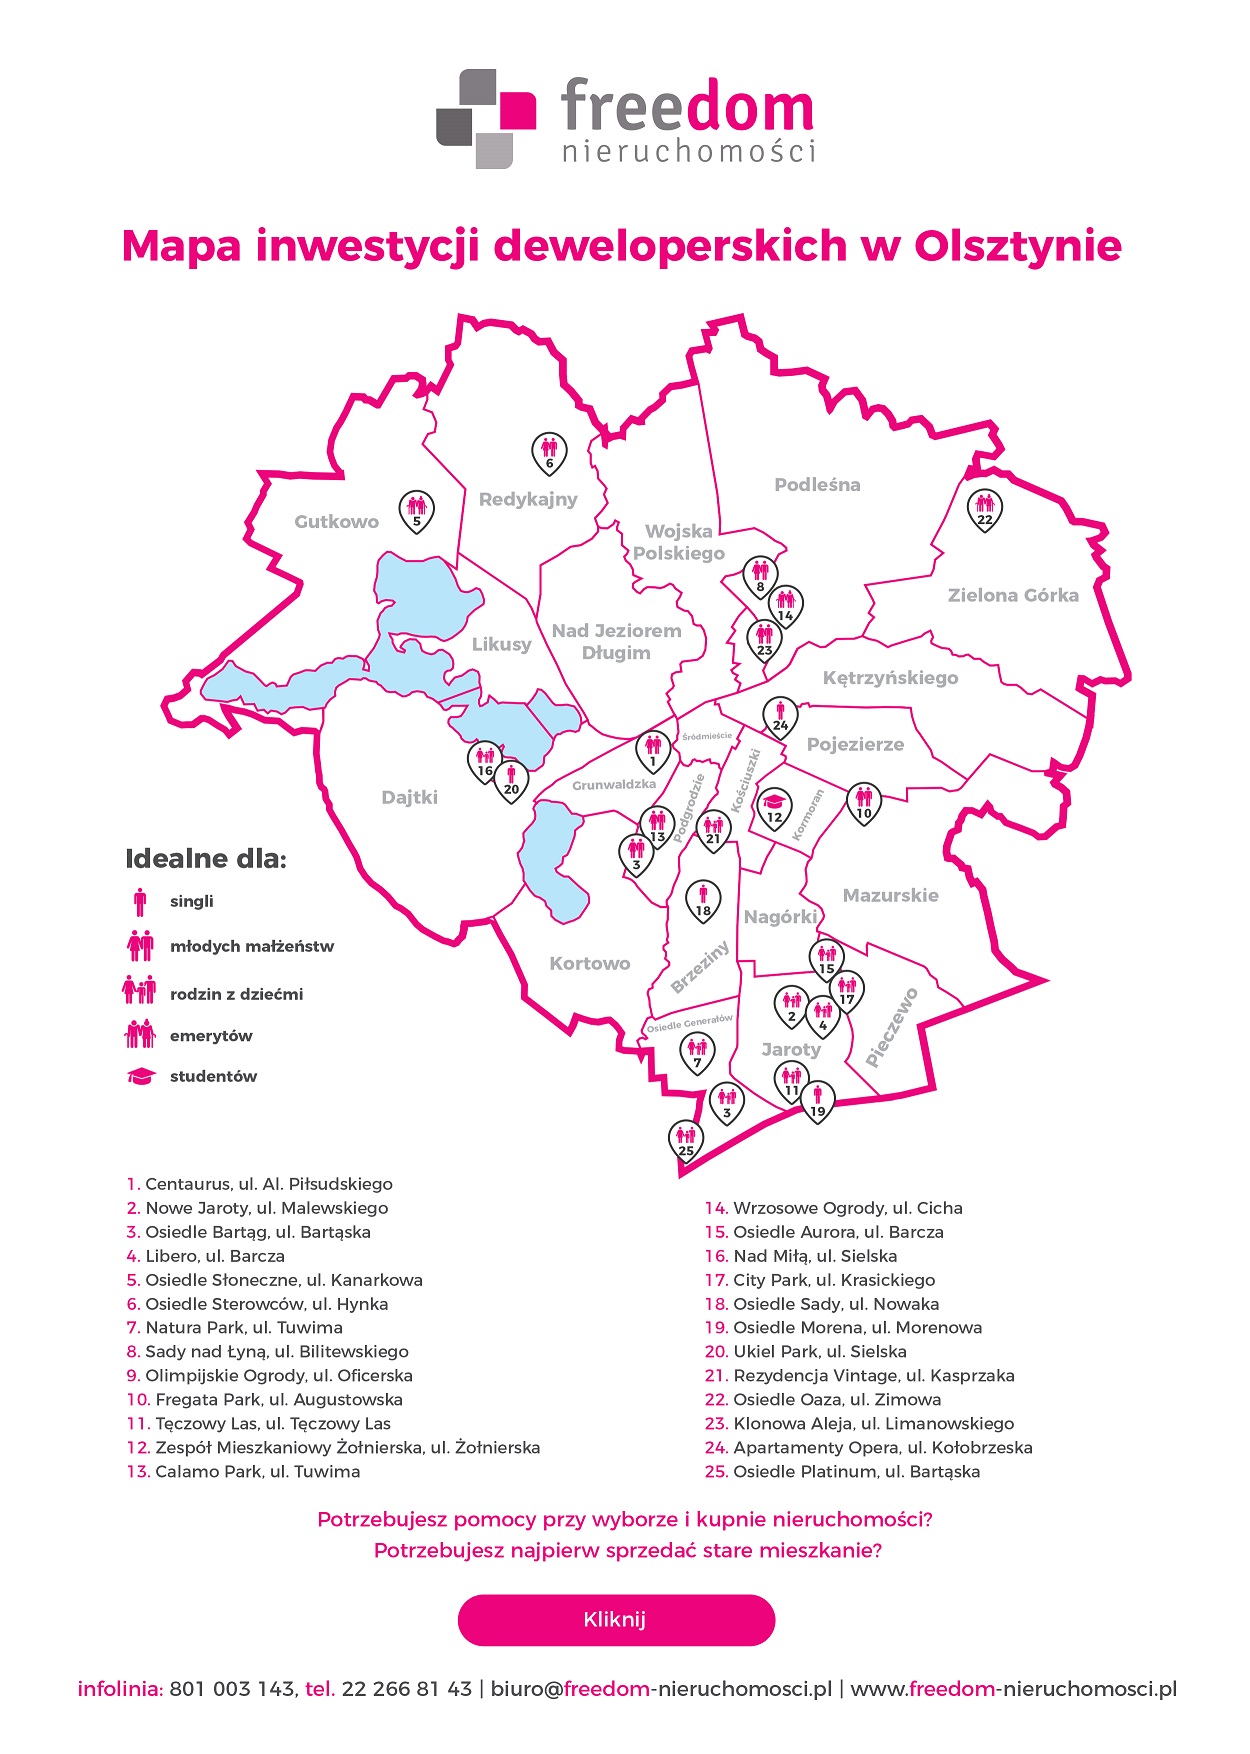 Mieszkania na sprzedaż w Olsztynie - mapa inwestycji deweloperskich